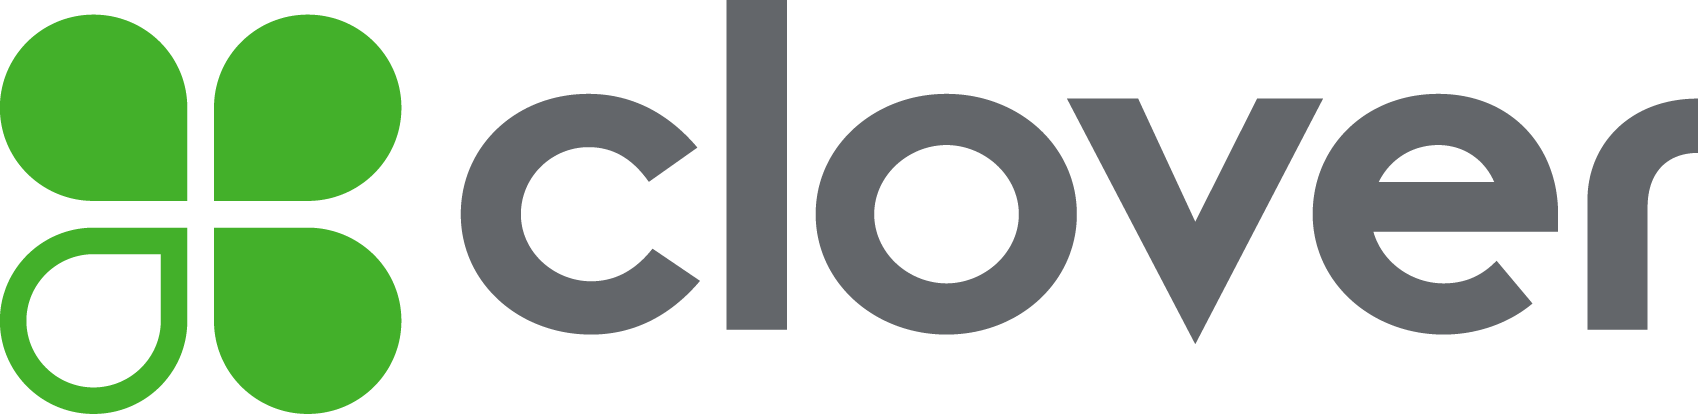 clover logo.